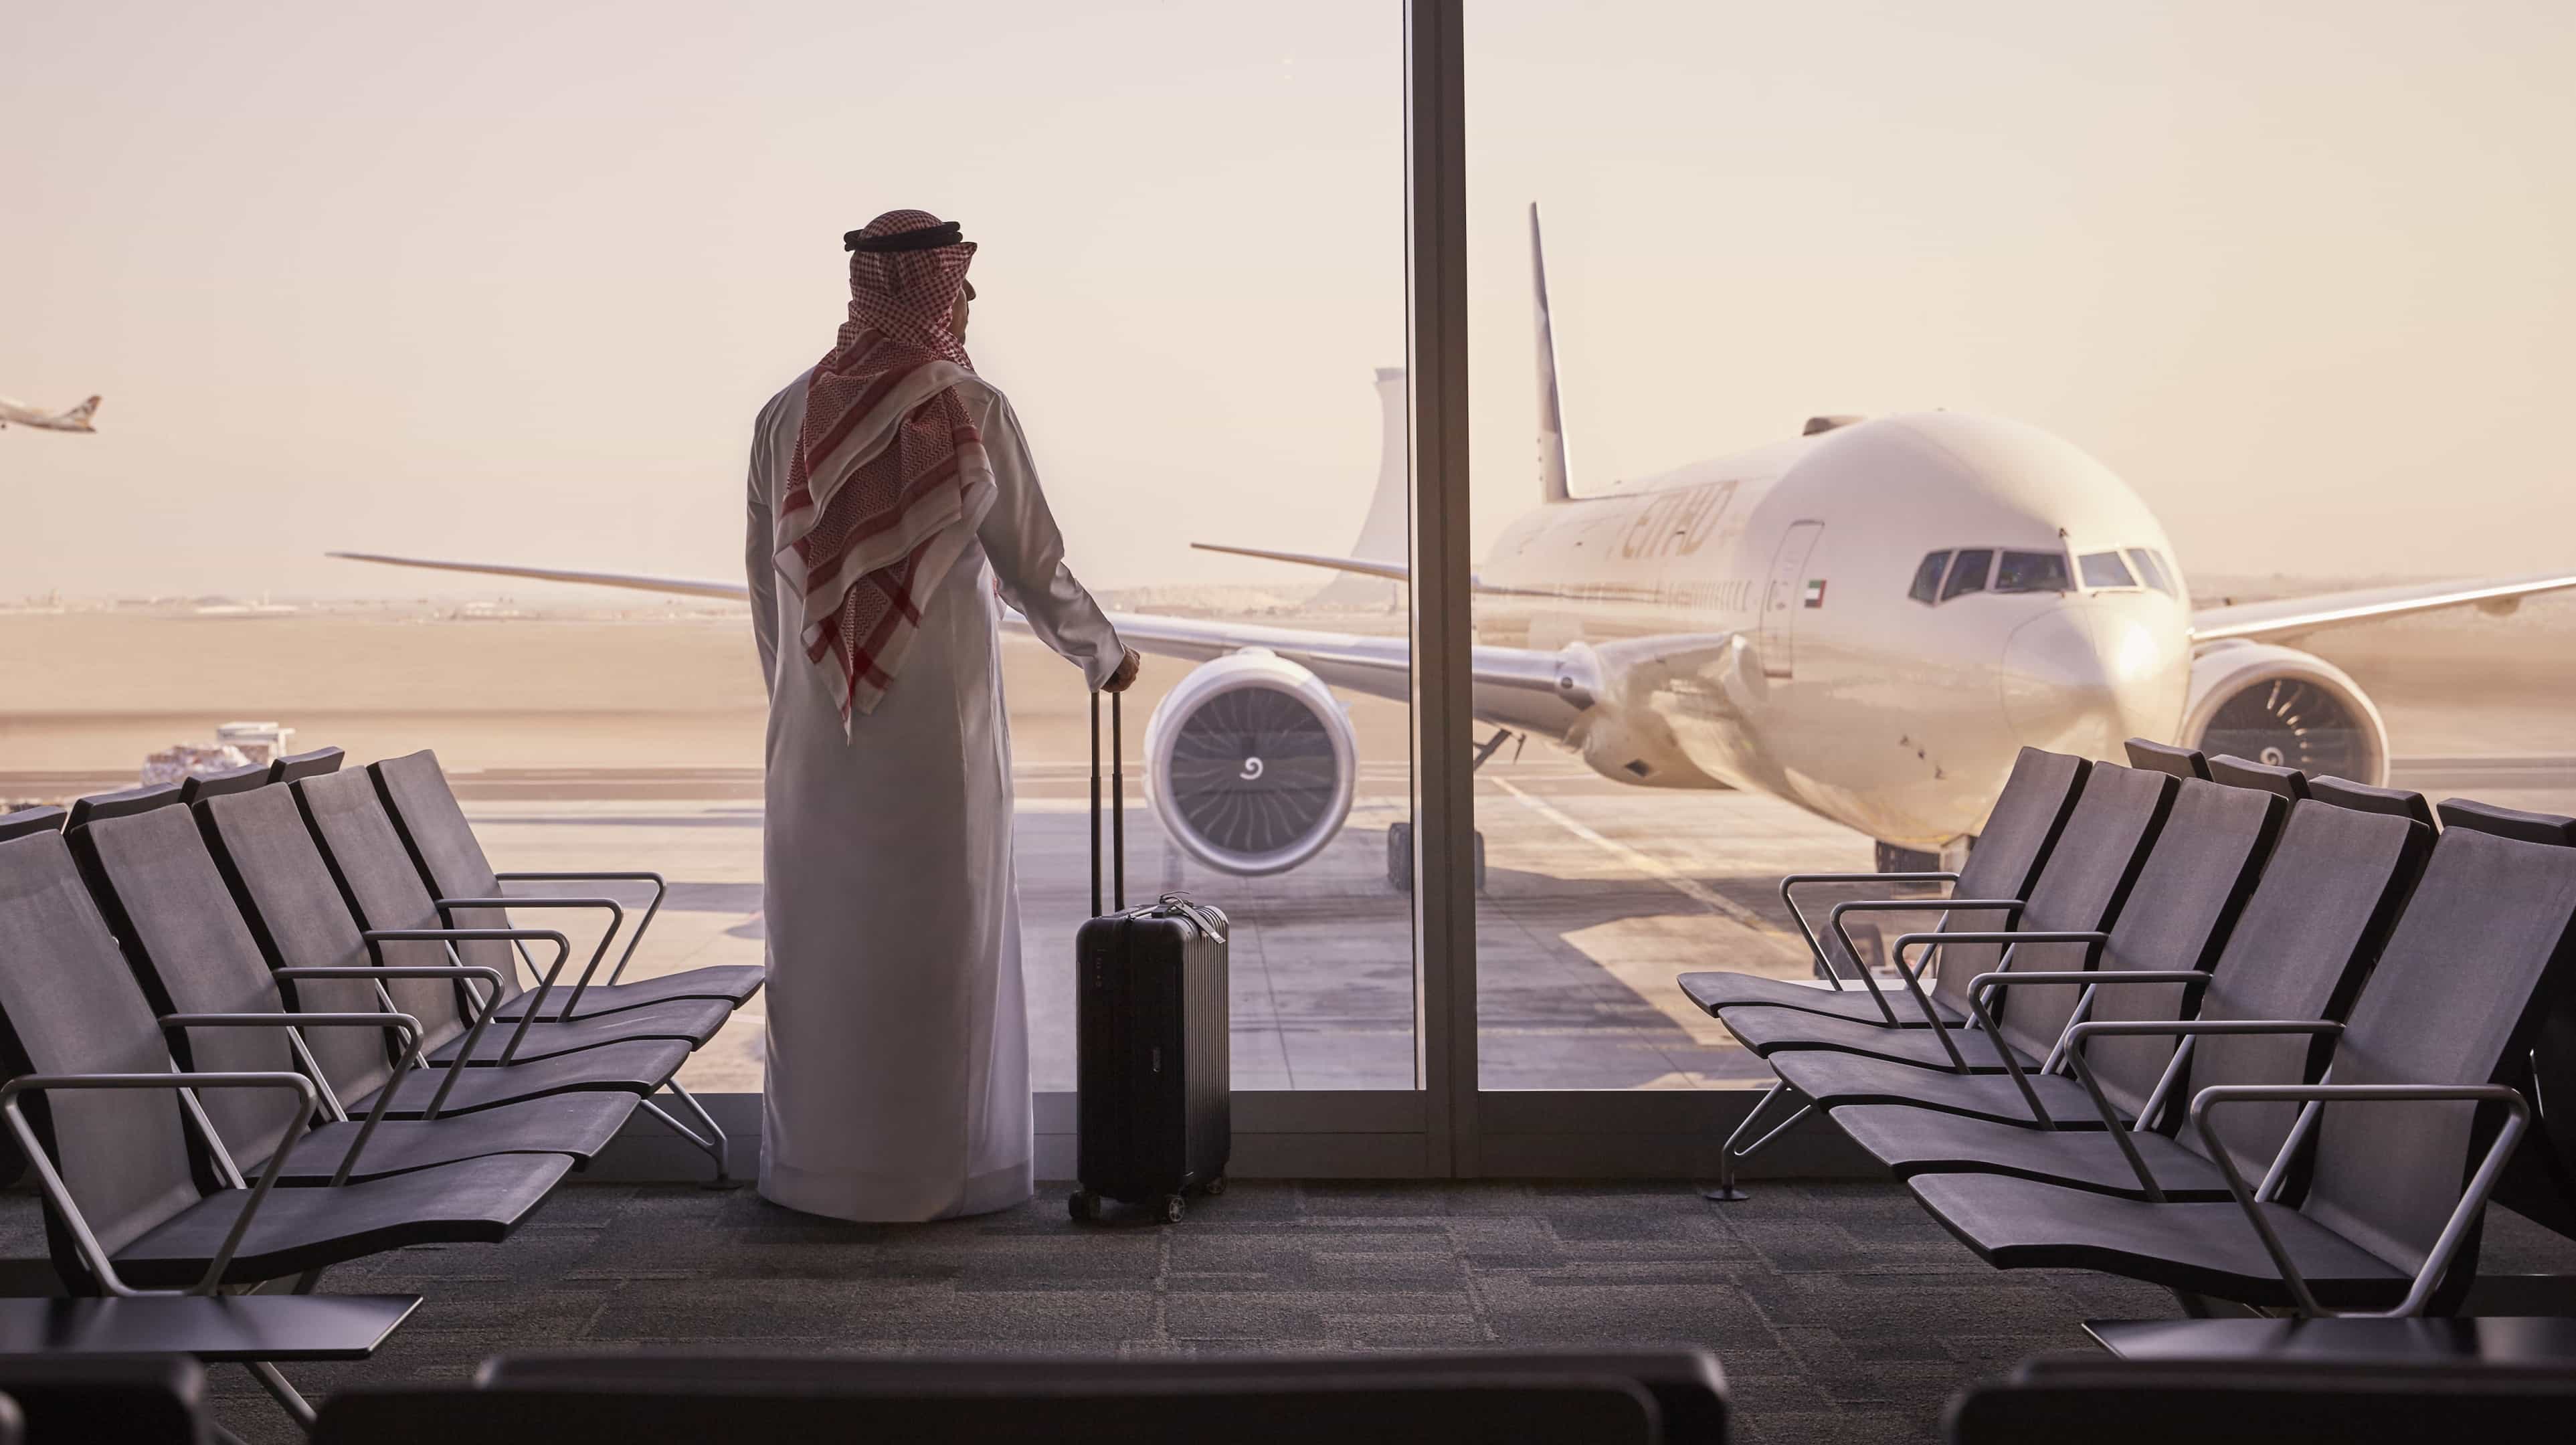 Ein Mann in traditioneller arabischer Kleidung wartet darauf, an Bord eines Etihad-Flugzeugs zu gehen